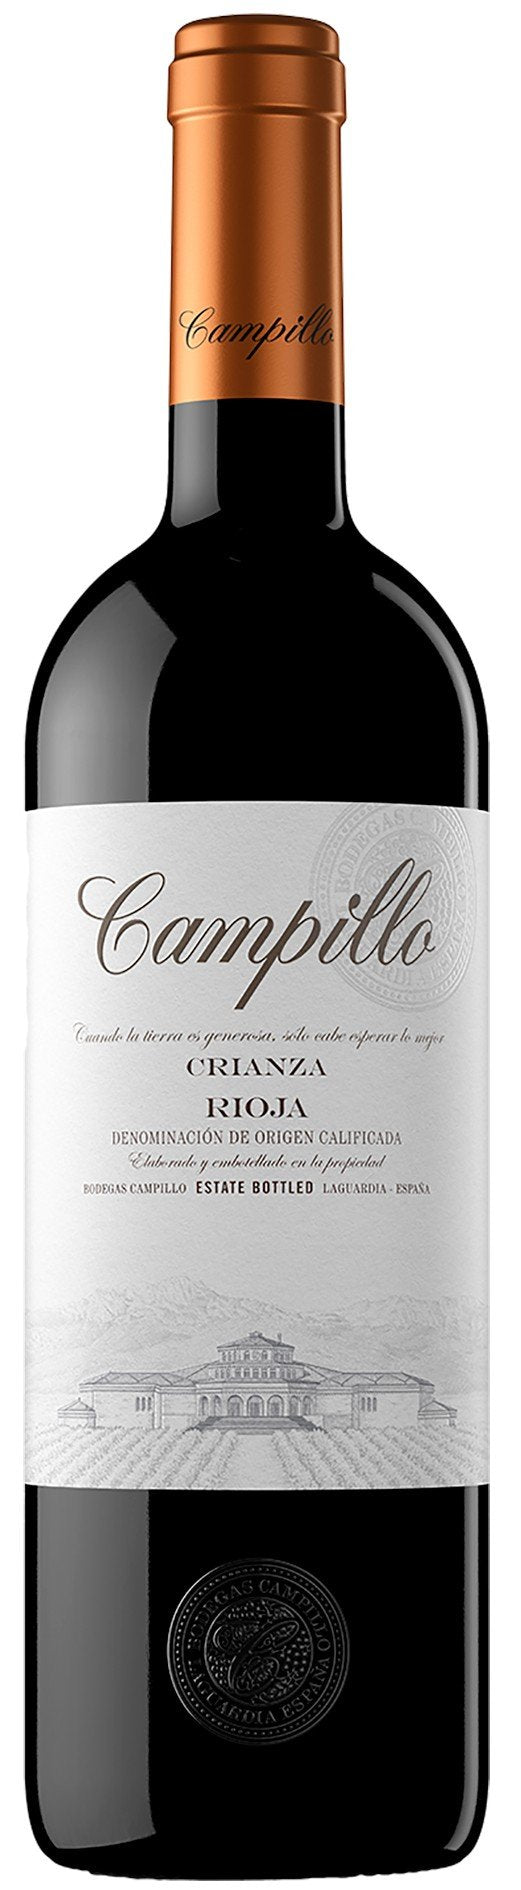 Campillo Rioja Crianza 2015